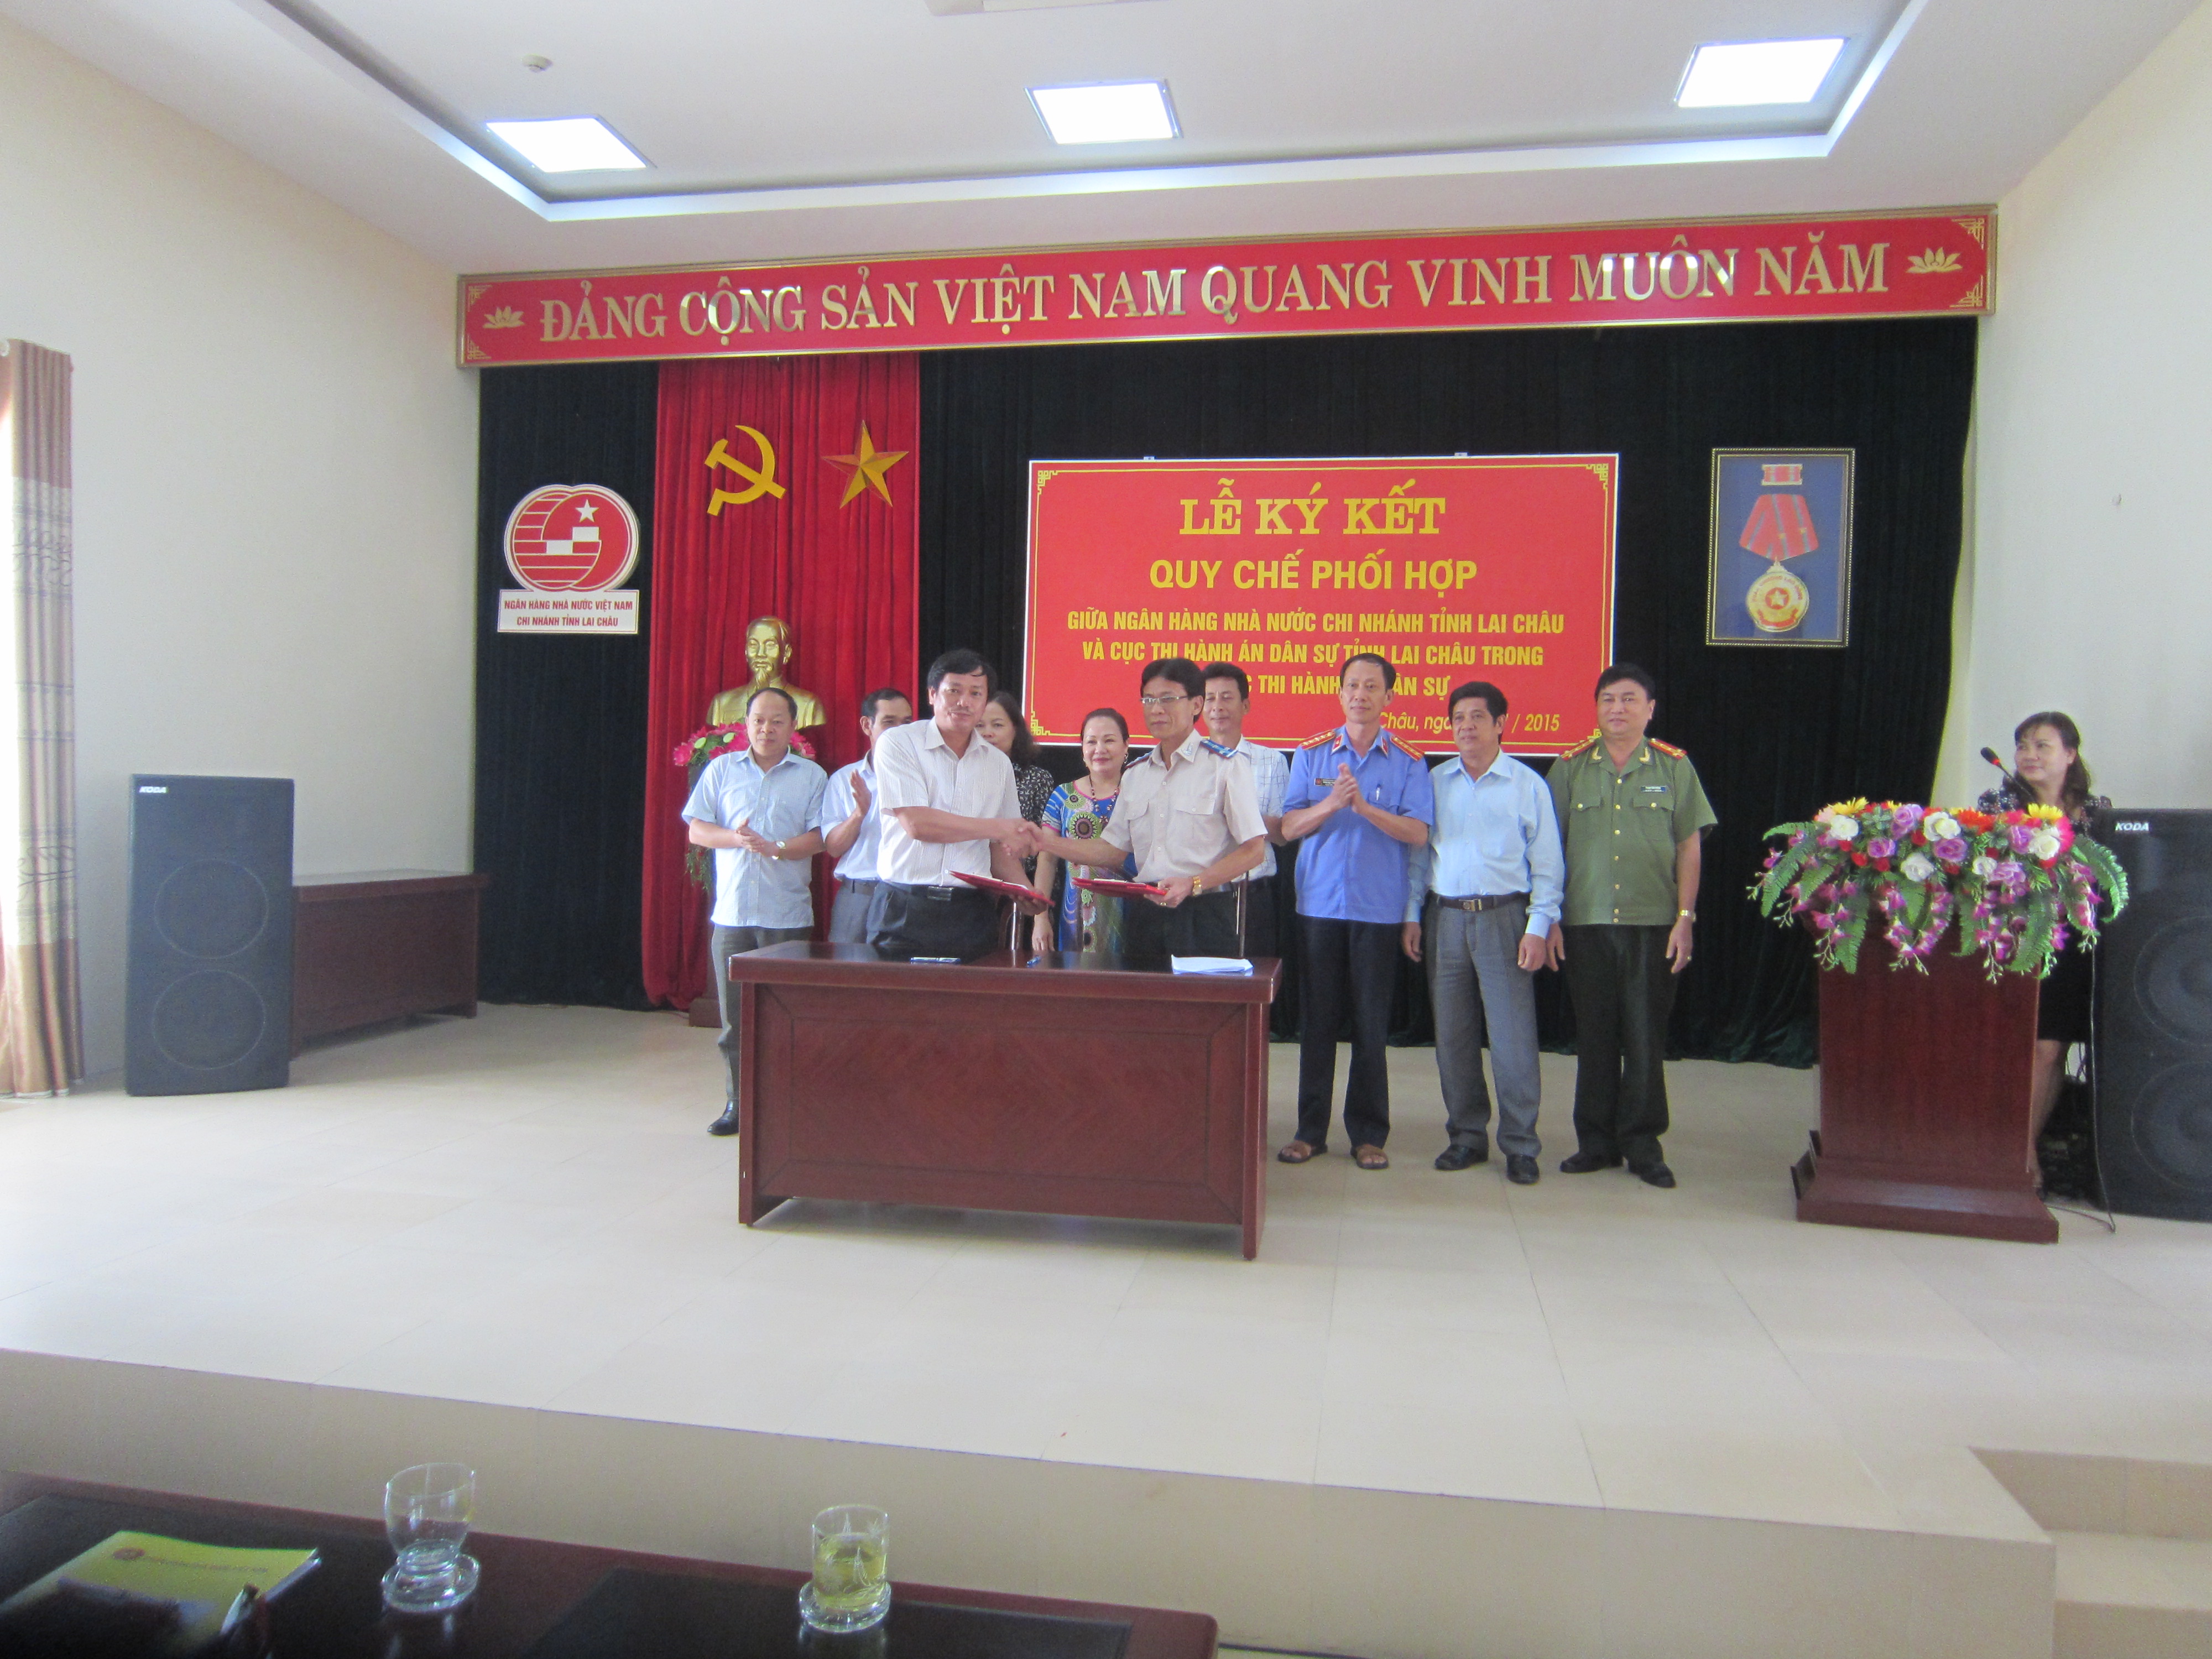 Cục Thi hành án dân sự tỉnh Lai Châu và Ngân hàng nhà nước Việt Nam chỉ nhánh tỉnh Lai Châu ký kết quy chế phối hợp trong công tác Thi hành án dân sự.